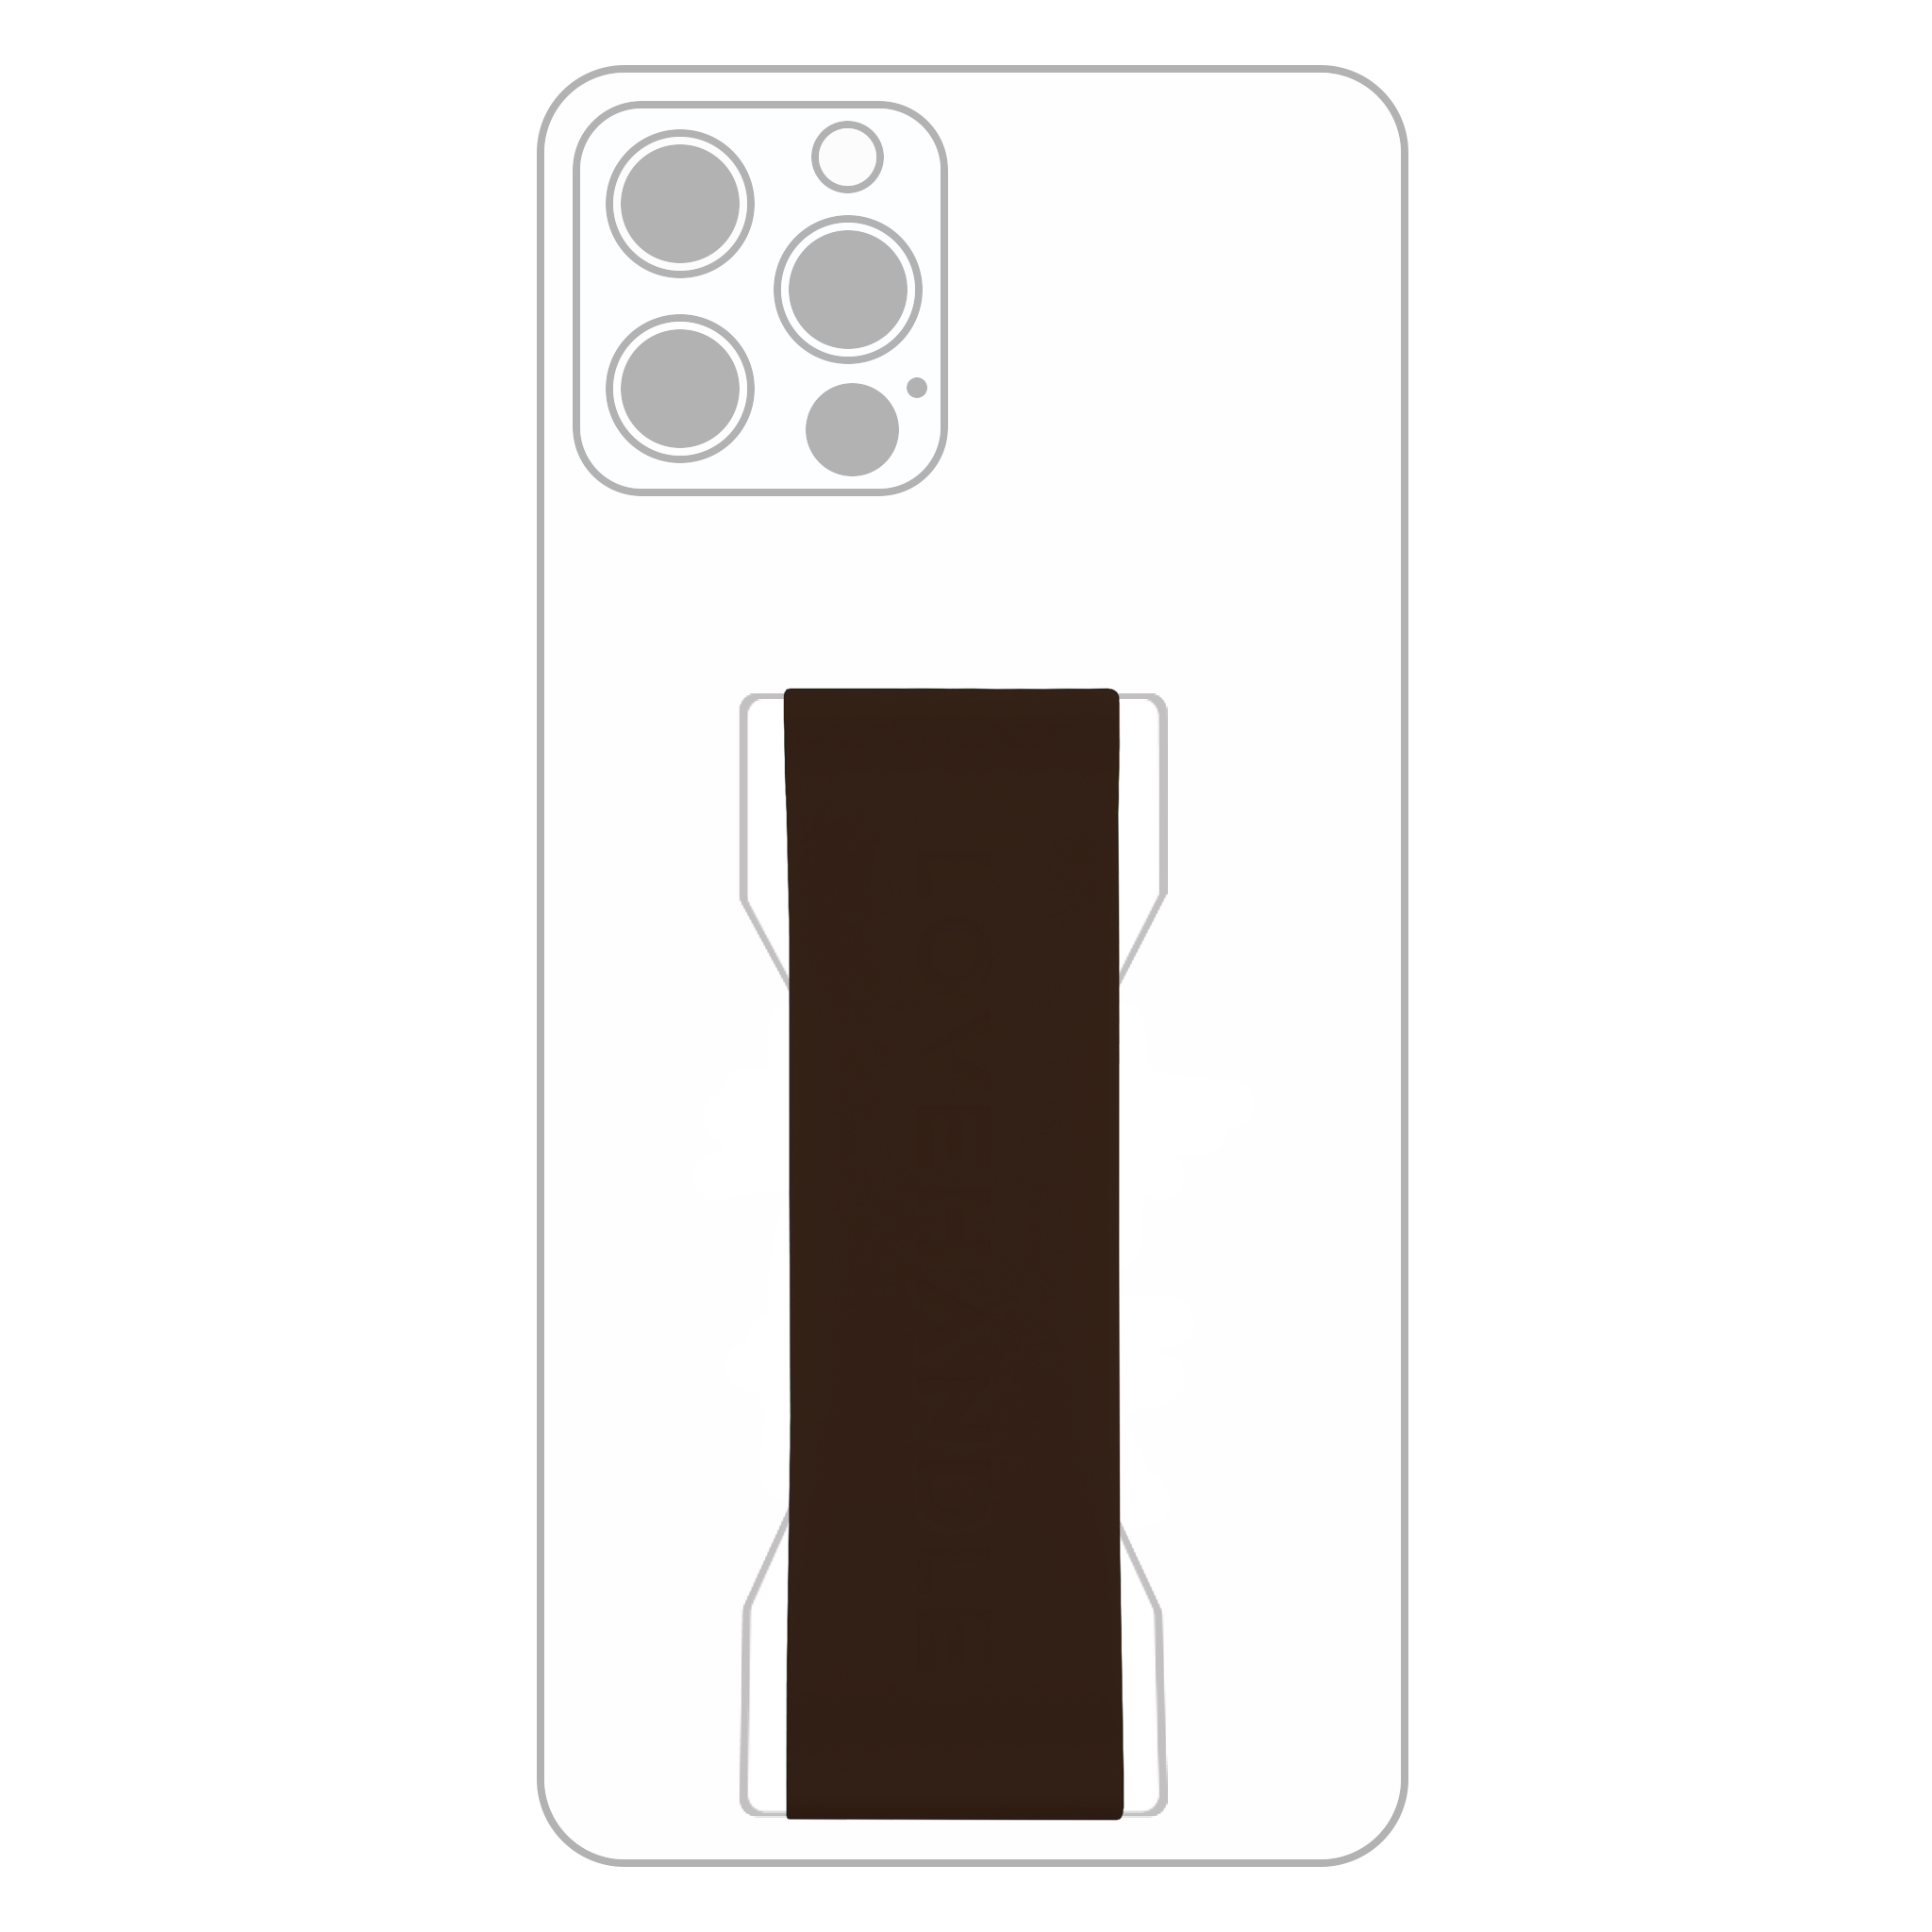 PRO Strap - Cocoa Brown